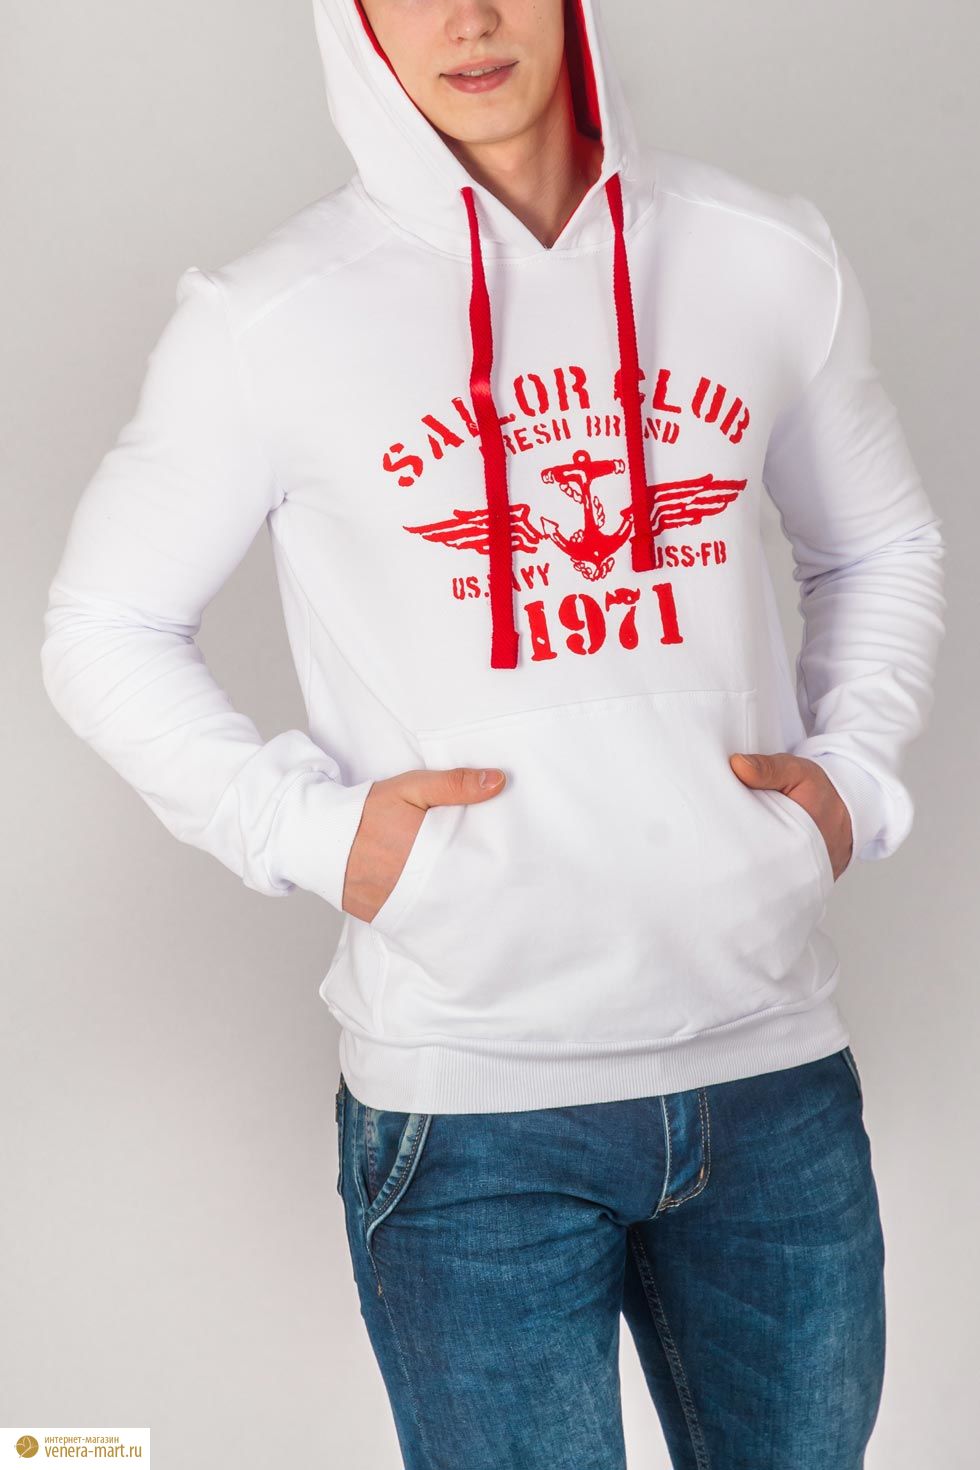 Анорак мужской "Sailor Club" с капюшоном